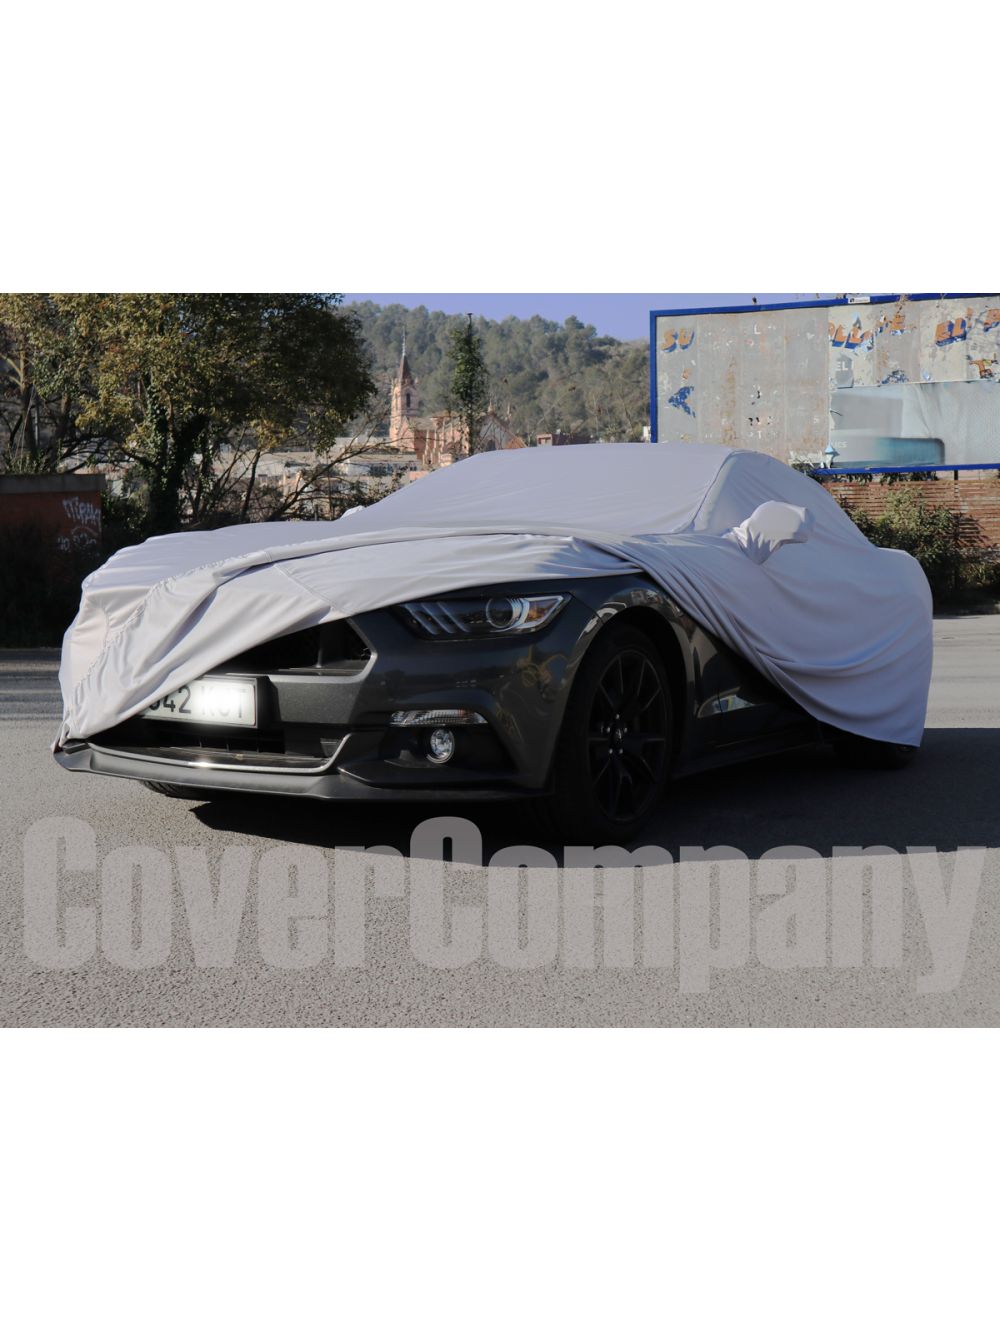 Custom outdoor car cover - Platinum Range